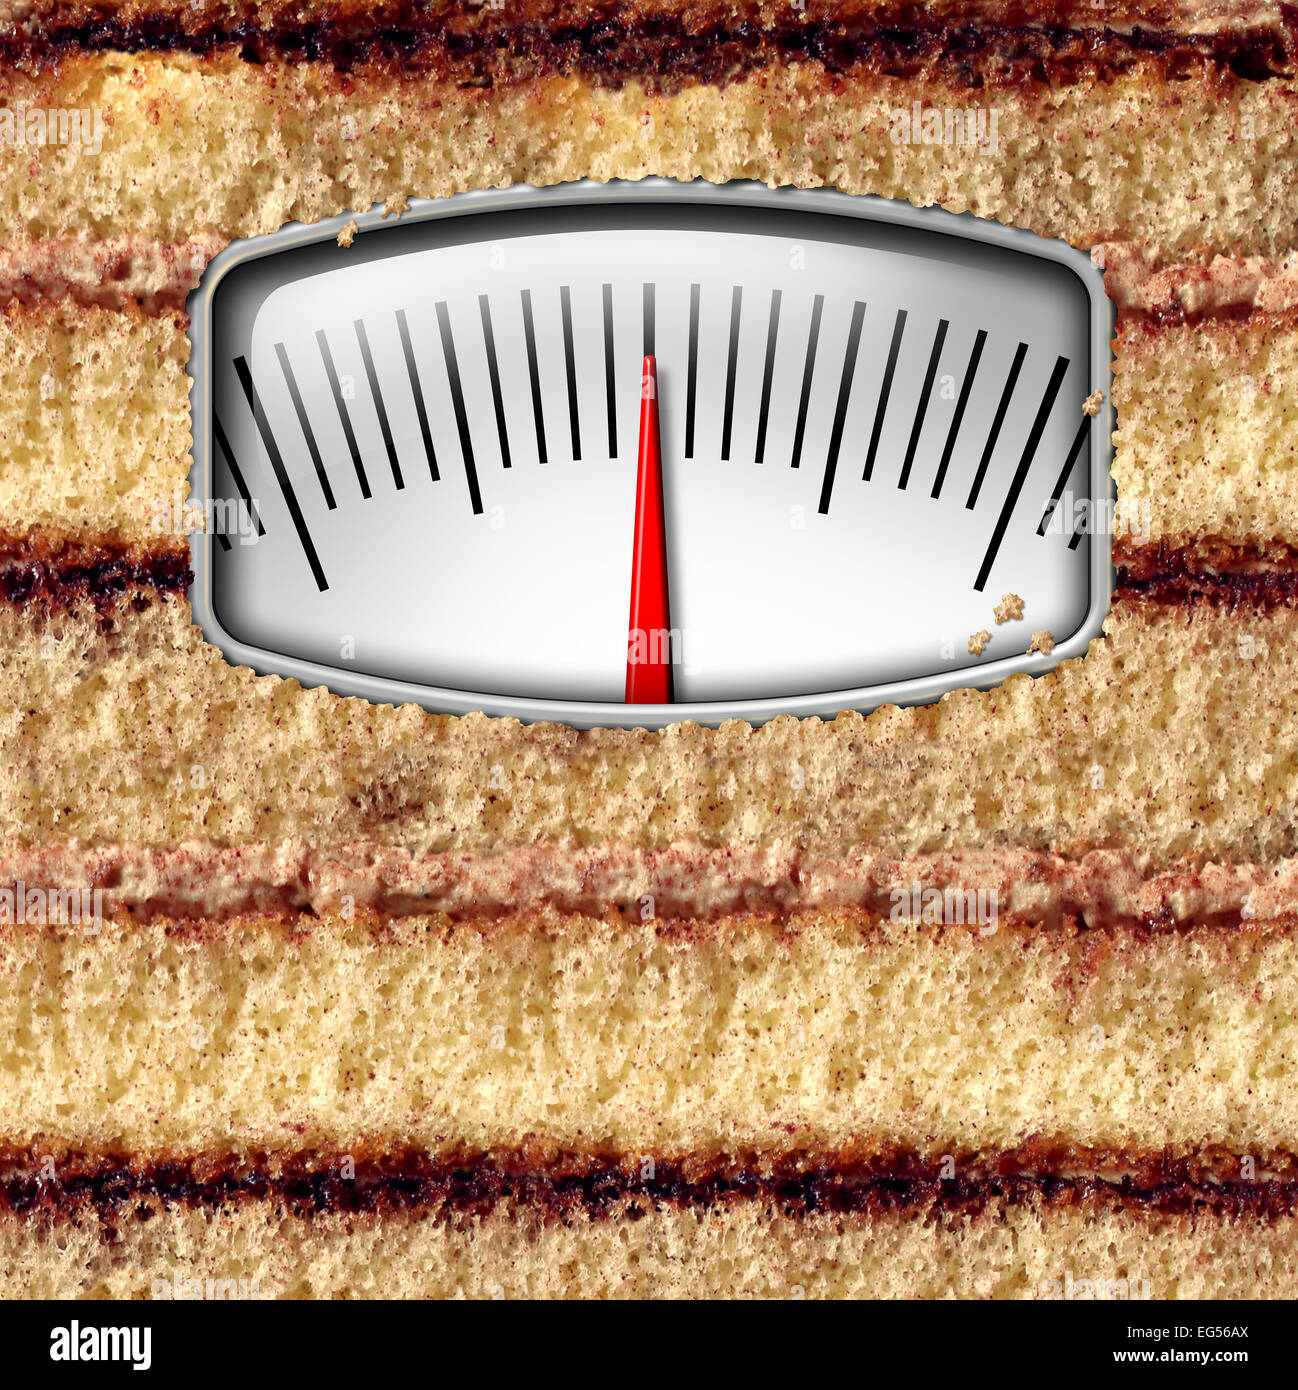 Concepto de escala de peso dieta y contar calorías símbolo como una tarta con un kilo o libra, equipos de medición como una metáfora de la tentación de comer. Foto de stock